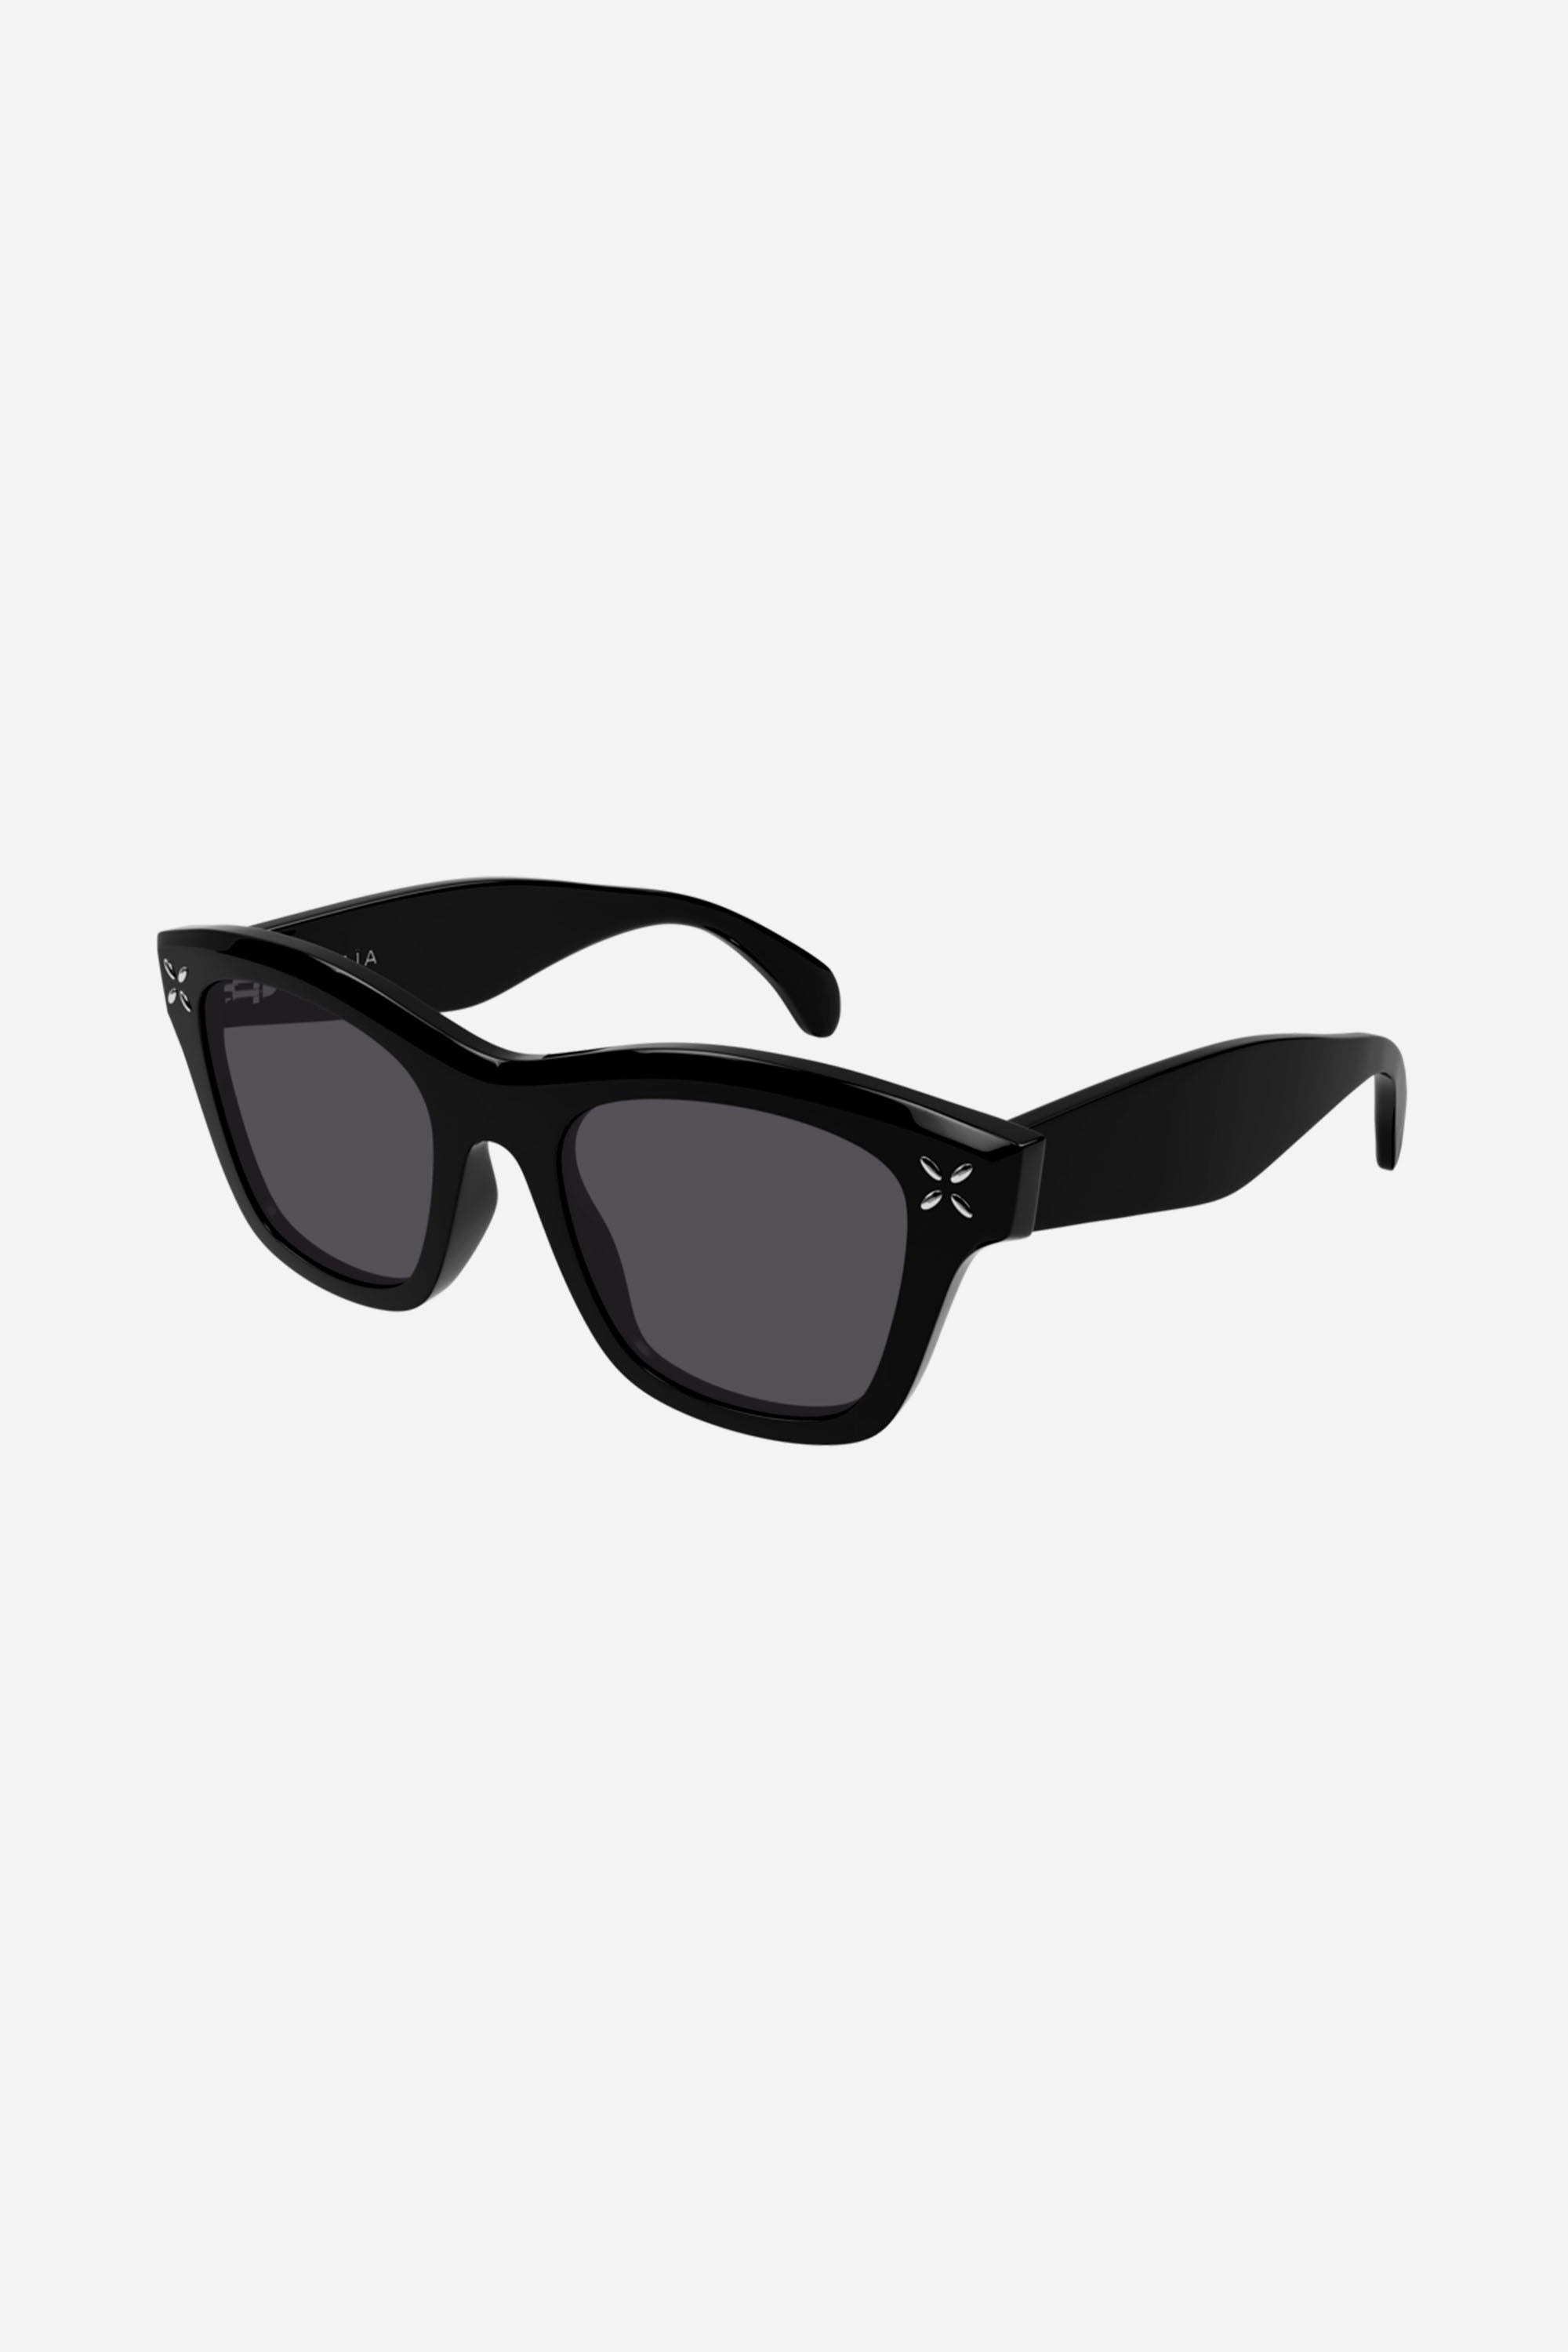 Alaia cat-eye black sunglasses - Eyewear Club